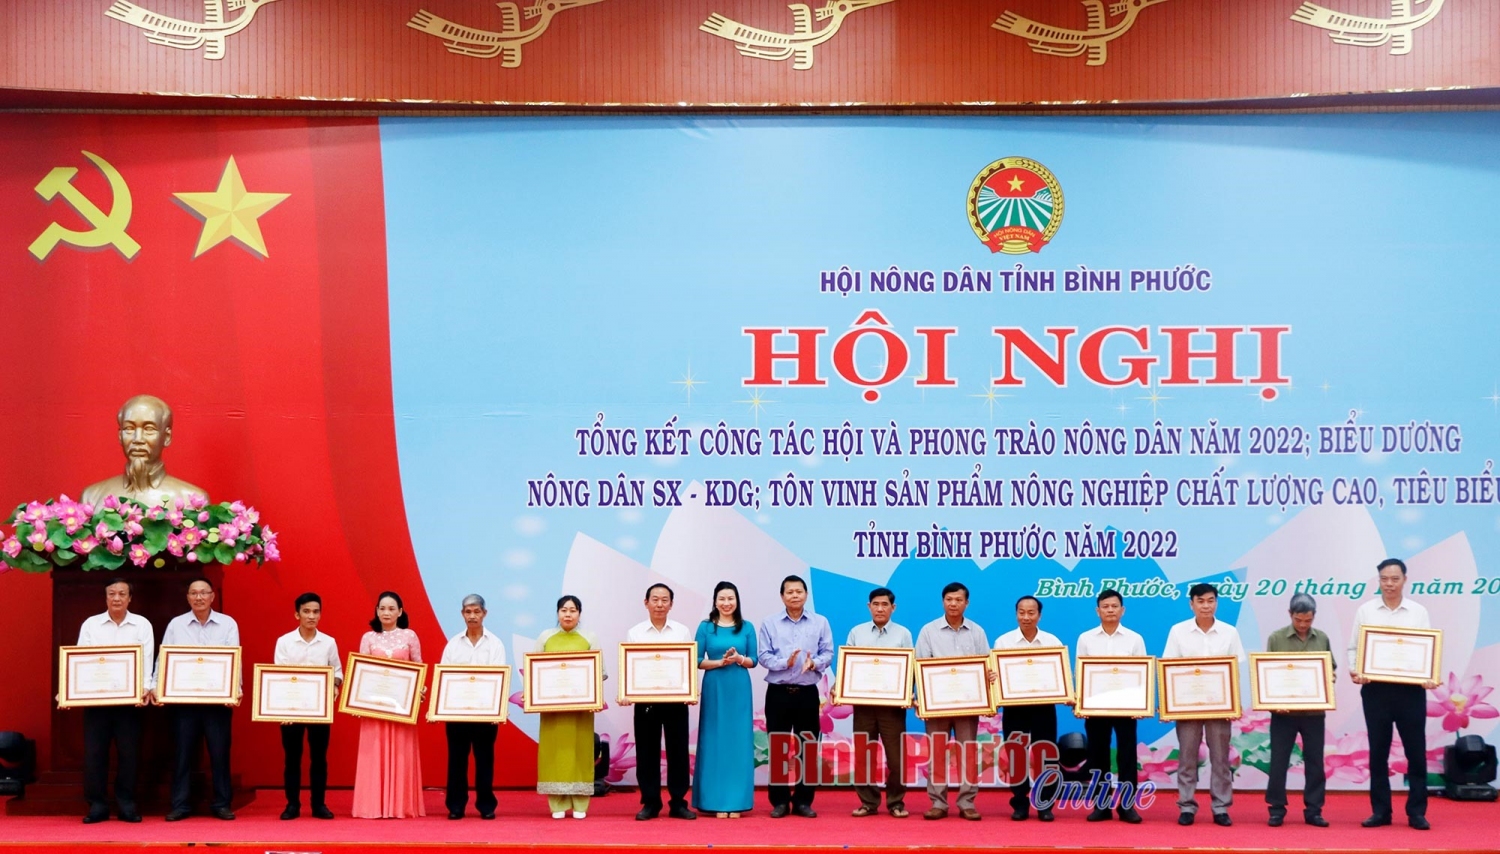 Lãnh đạo Trung ương Hội Nông dân Việt Nam trao bằng khen của Thủ tướng Chính phủ cho 14 hộ nông sản xuất kinh doanh giỏi tỉnh Bình Phước. Nguồn ảnh: Báo Bình Phước.